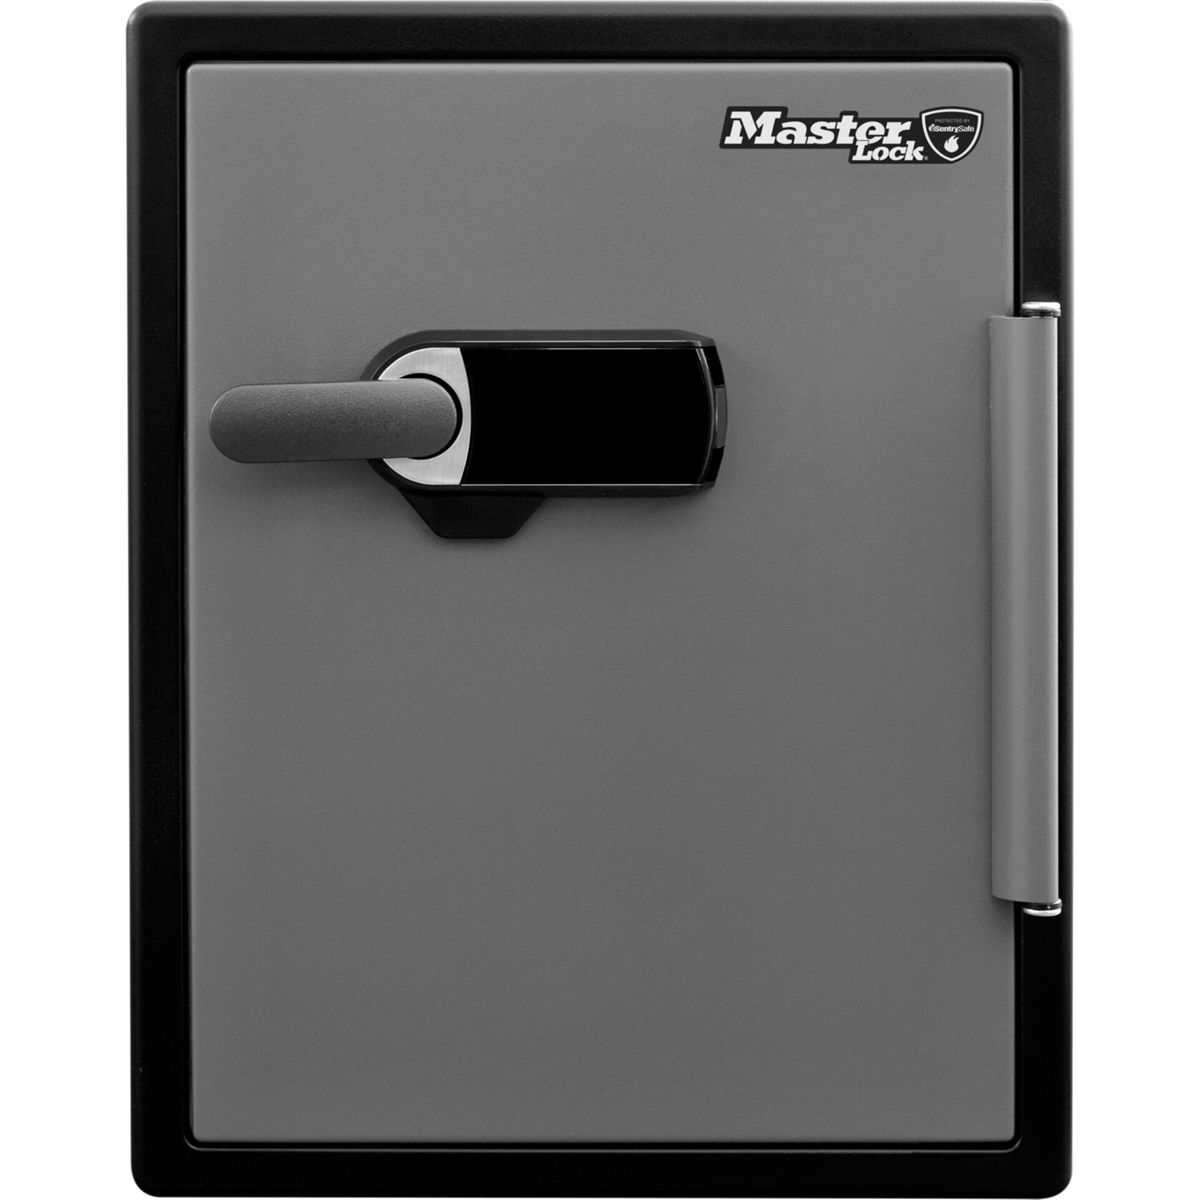 Master digitaler Tresor grau mit Sicherheitssafe MASTERLOCK schwarz Kombination Lock / LFW205TWC